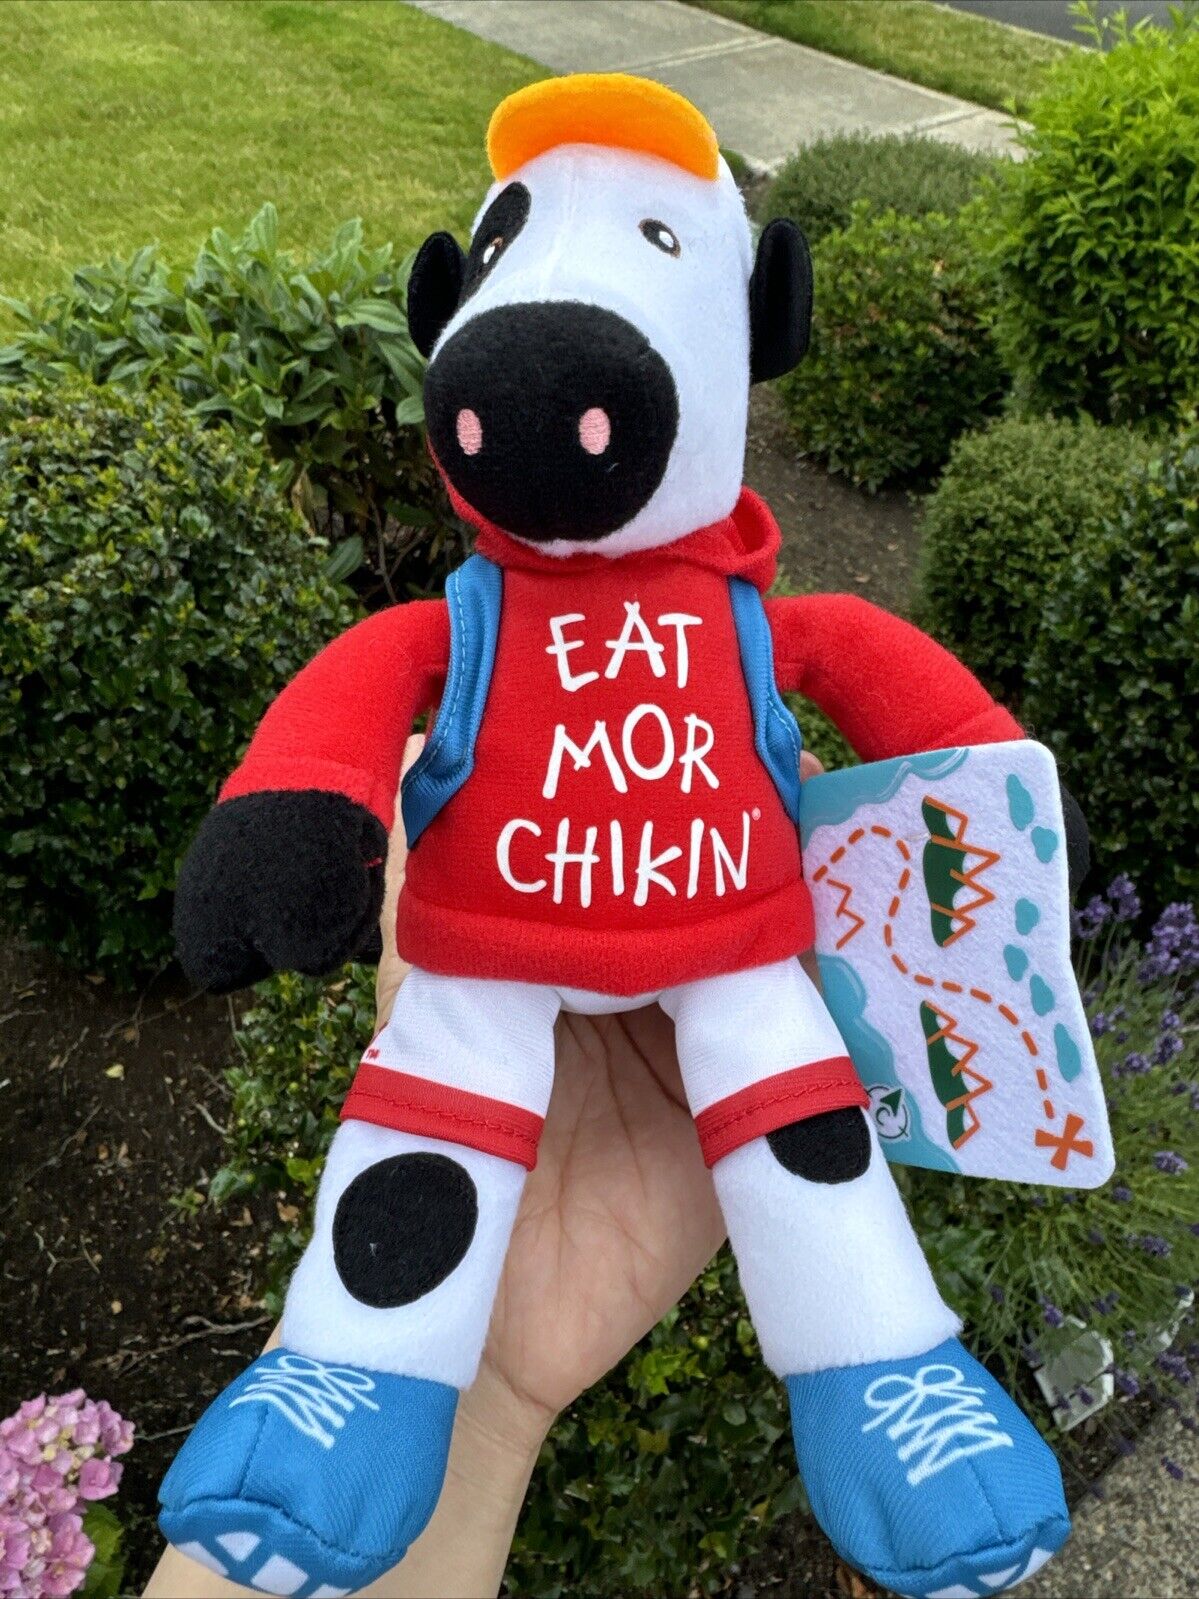 Chick-Fil-a Plush Cow